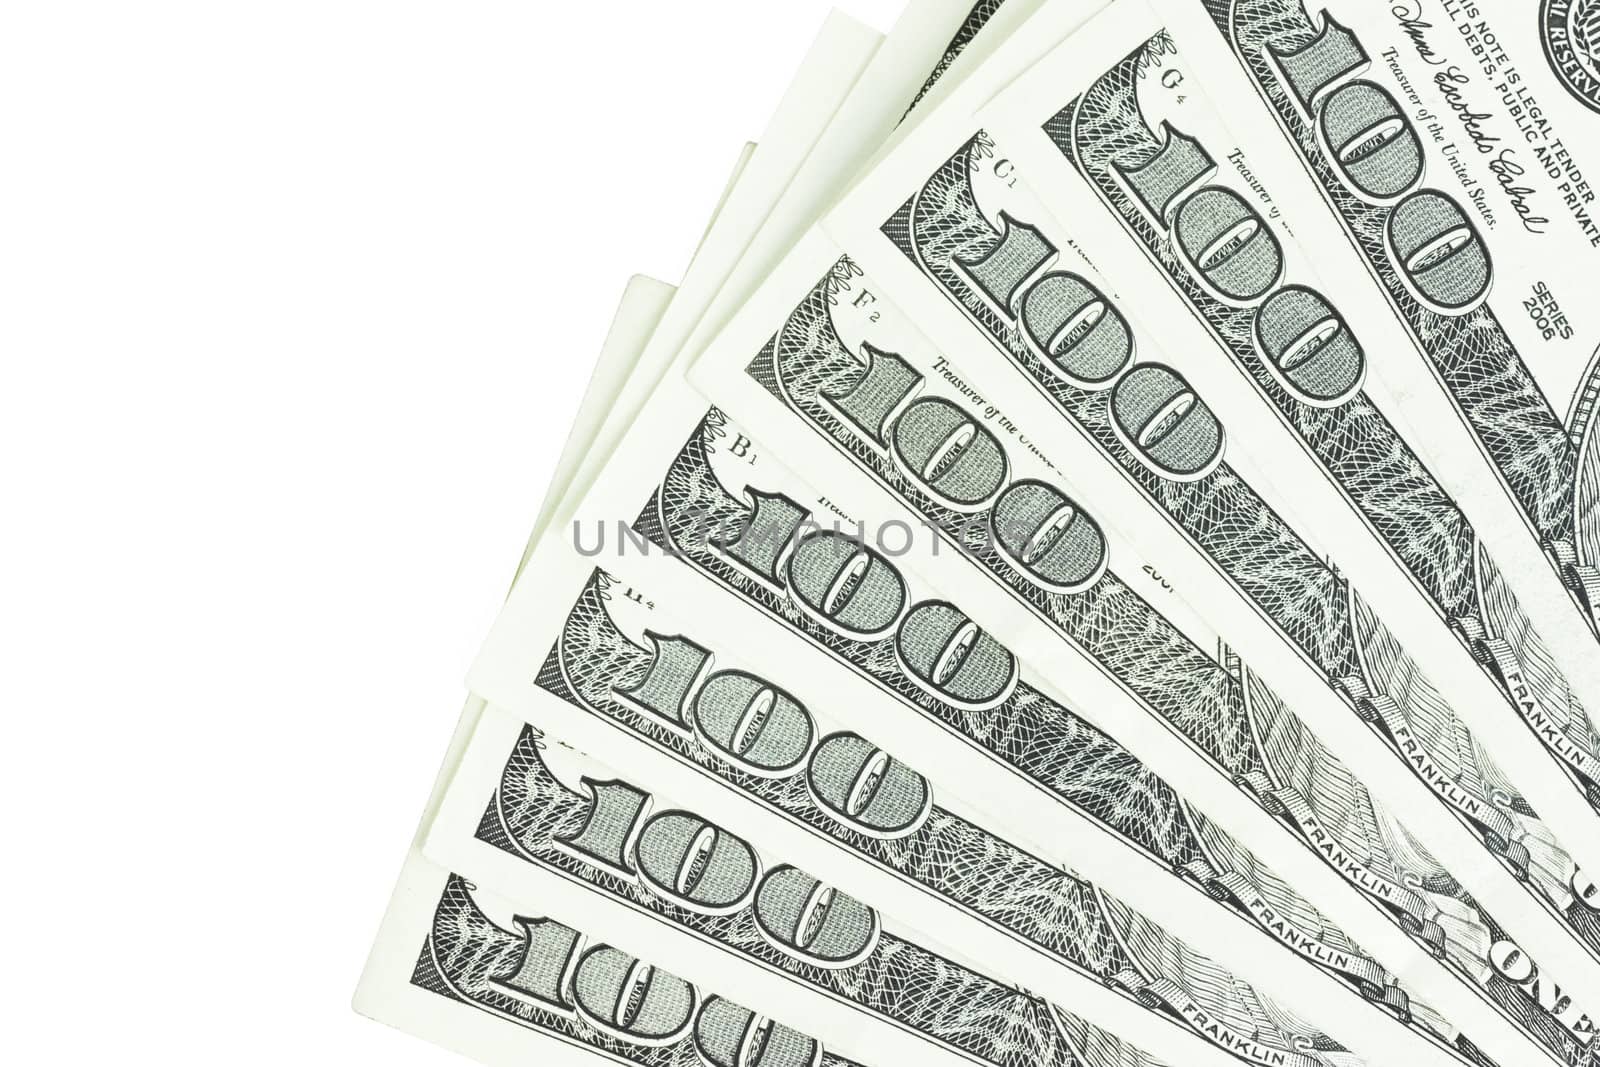 One Hundred Dollar Bills. Close-up shot by rozhenyuk